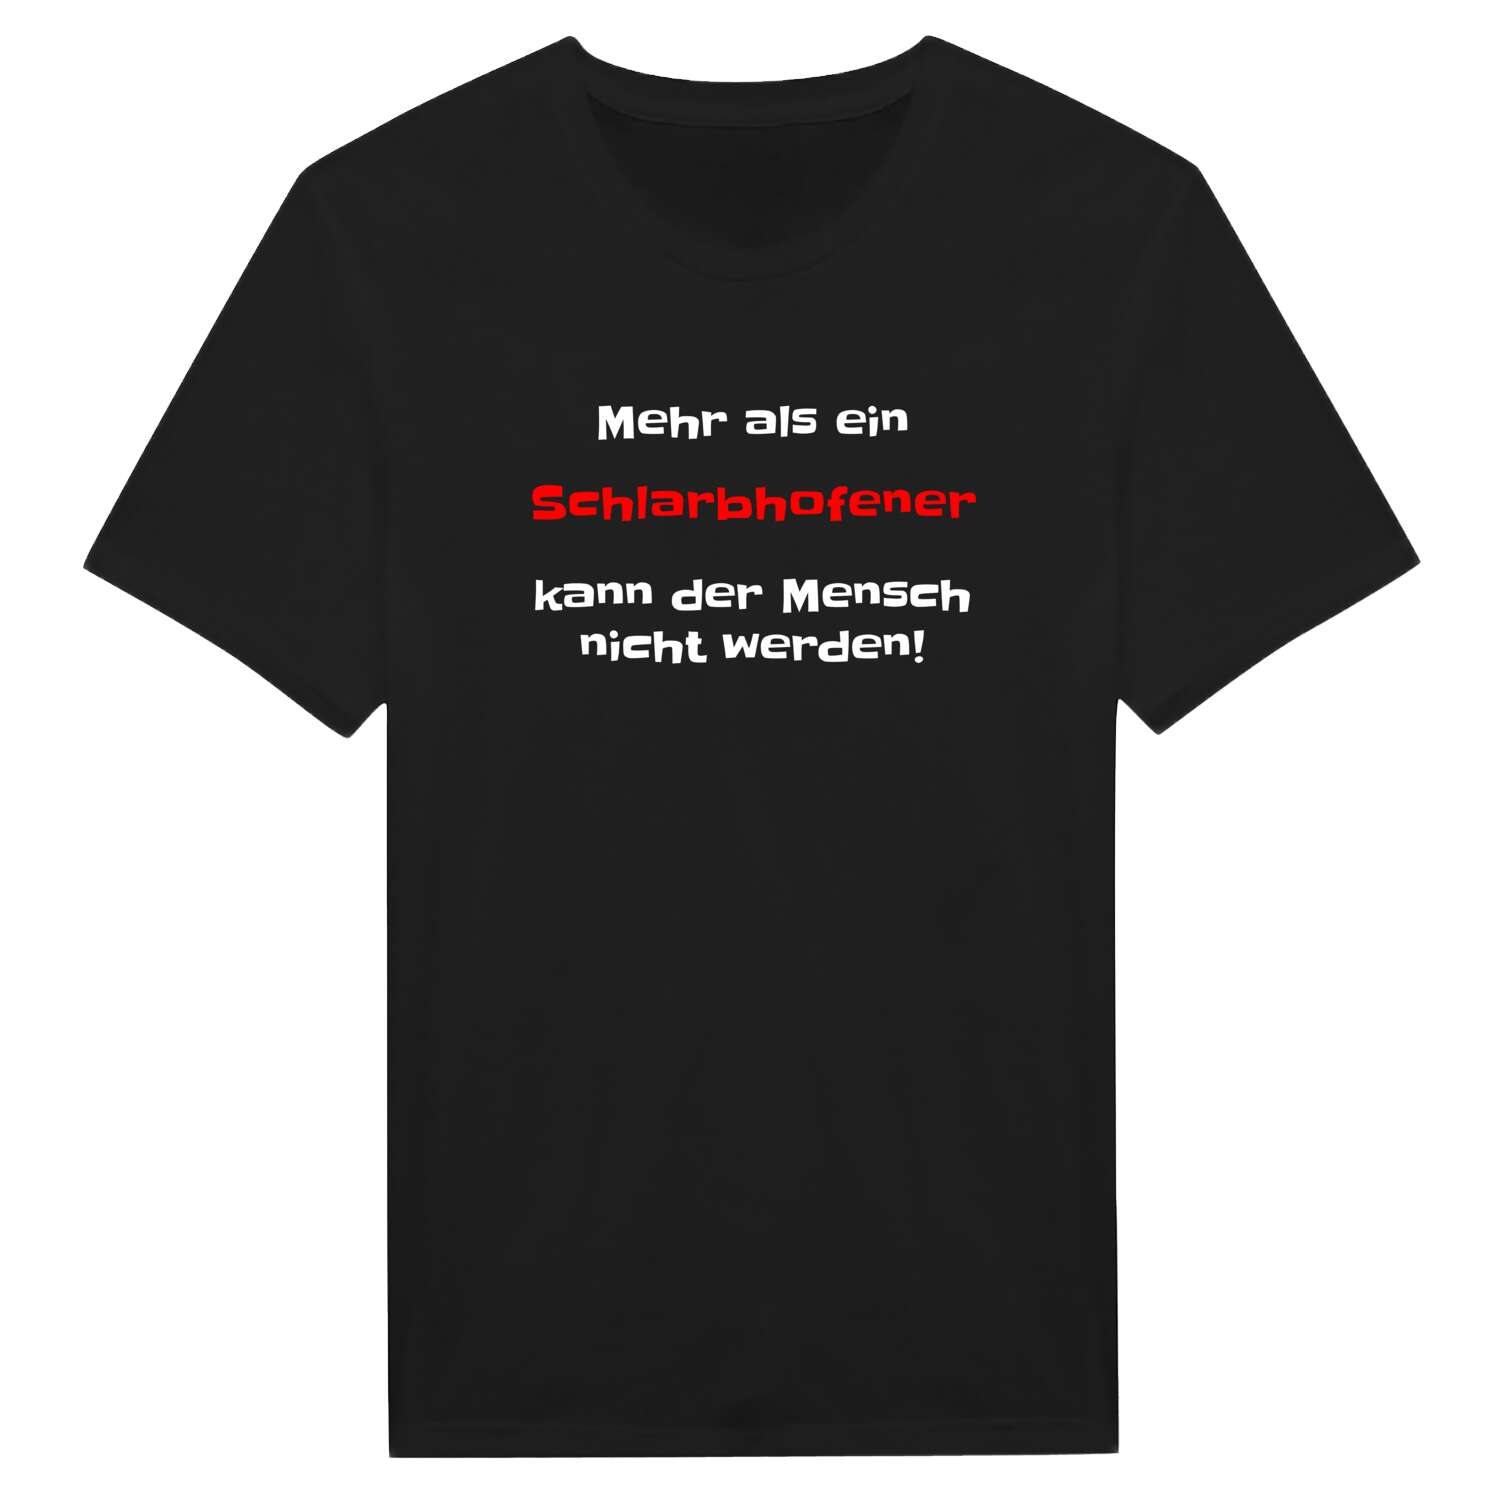 Schlarbhofen T-Shirt »Mehr als ein«